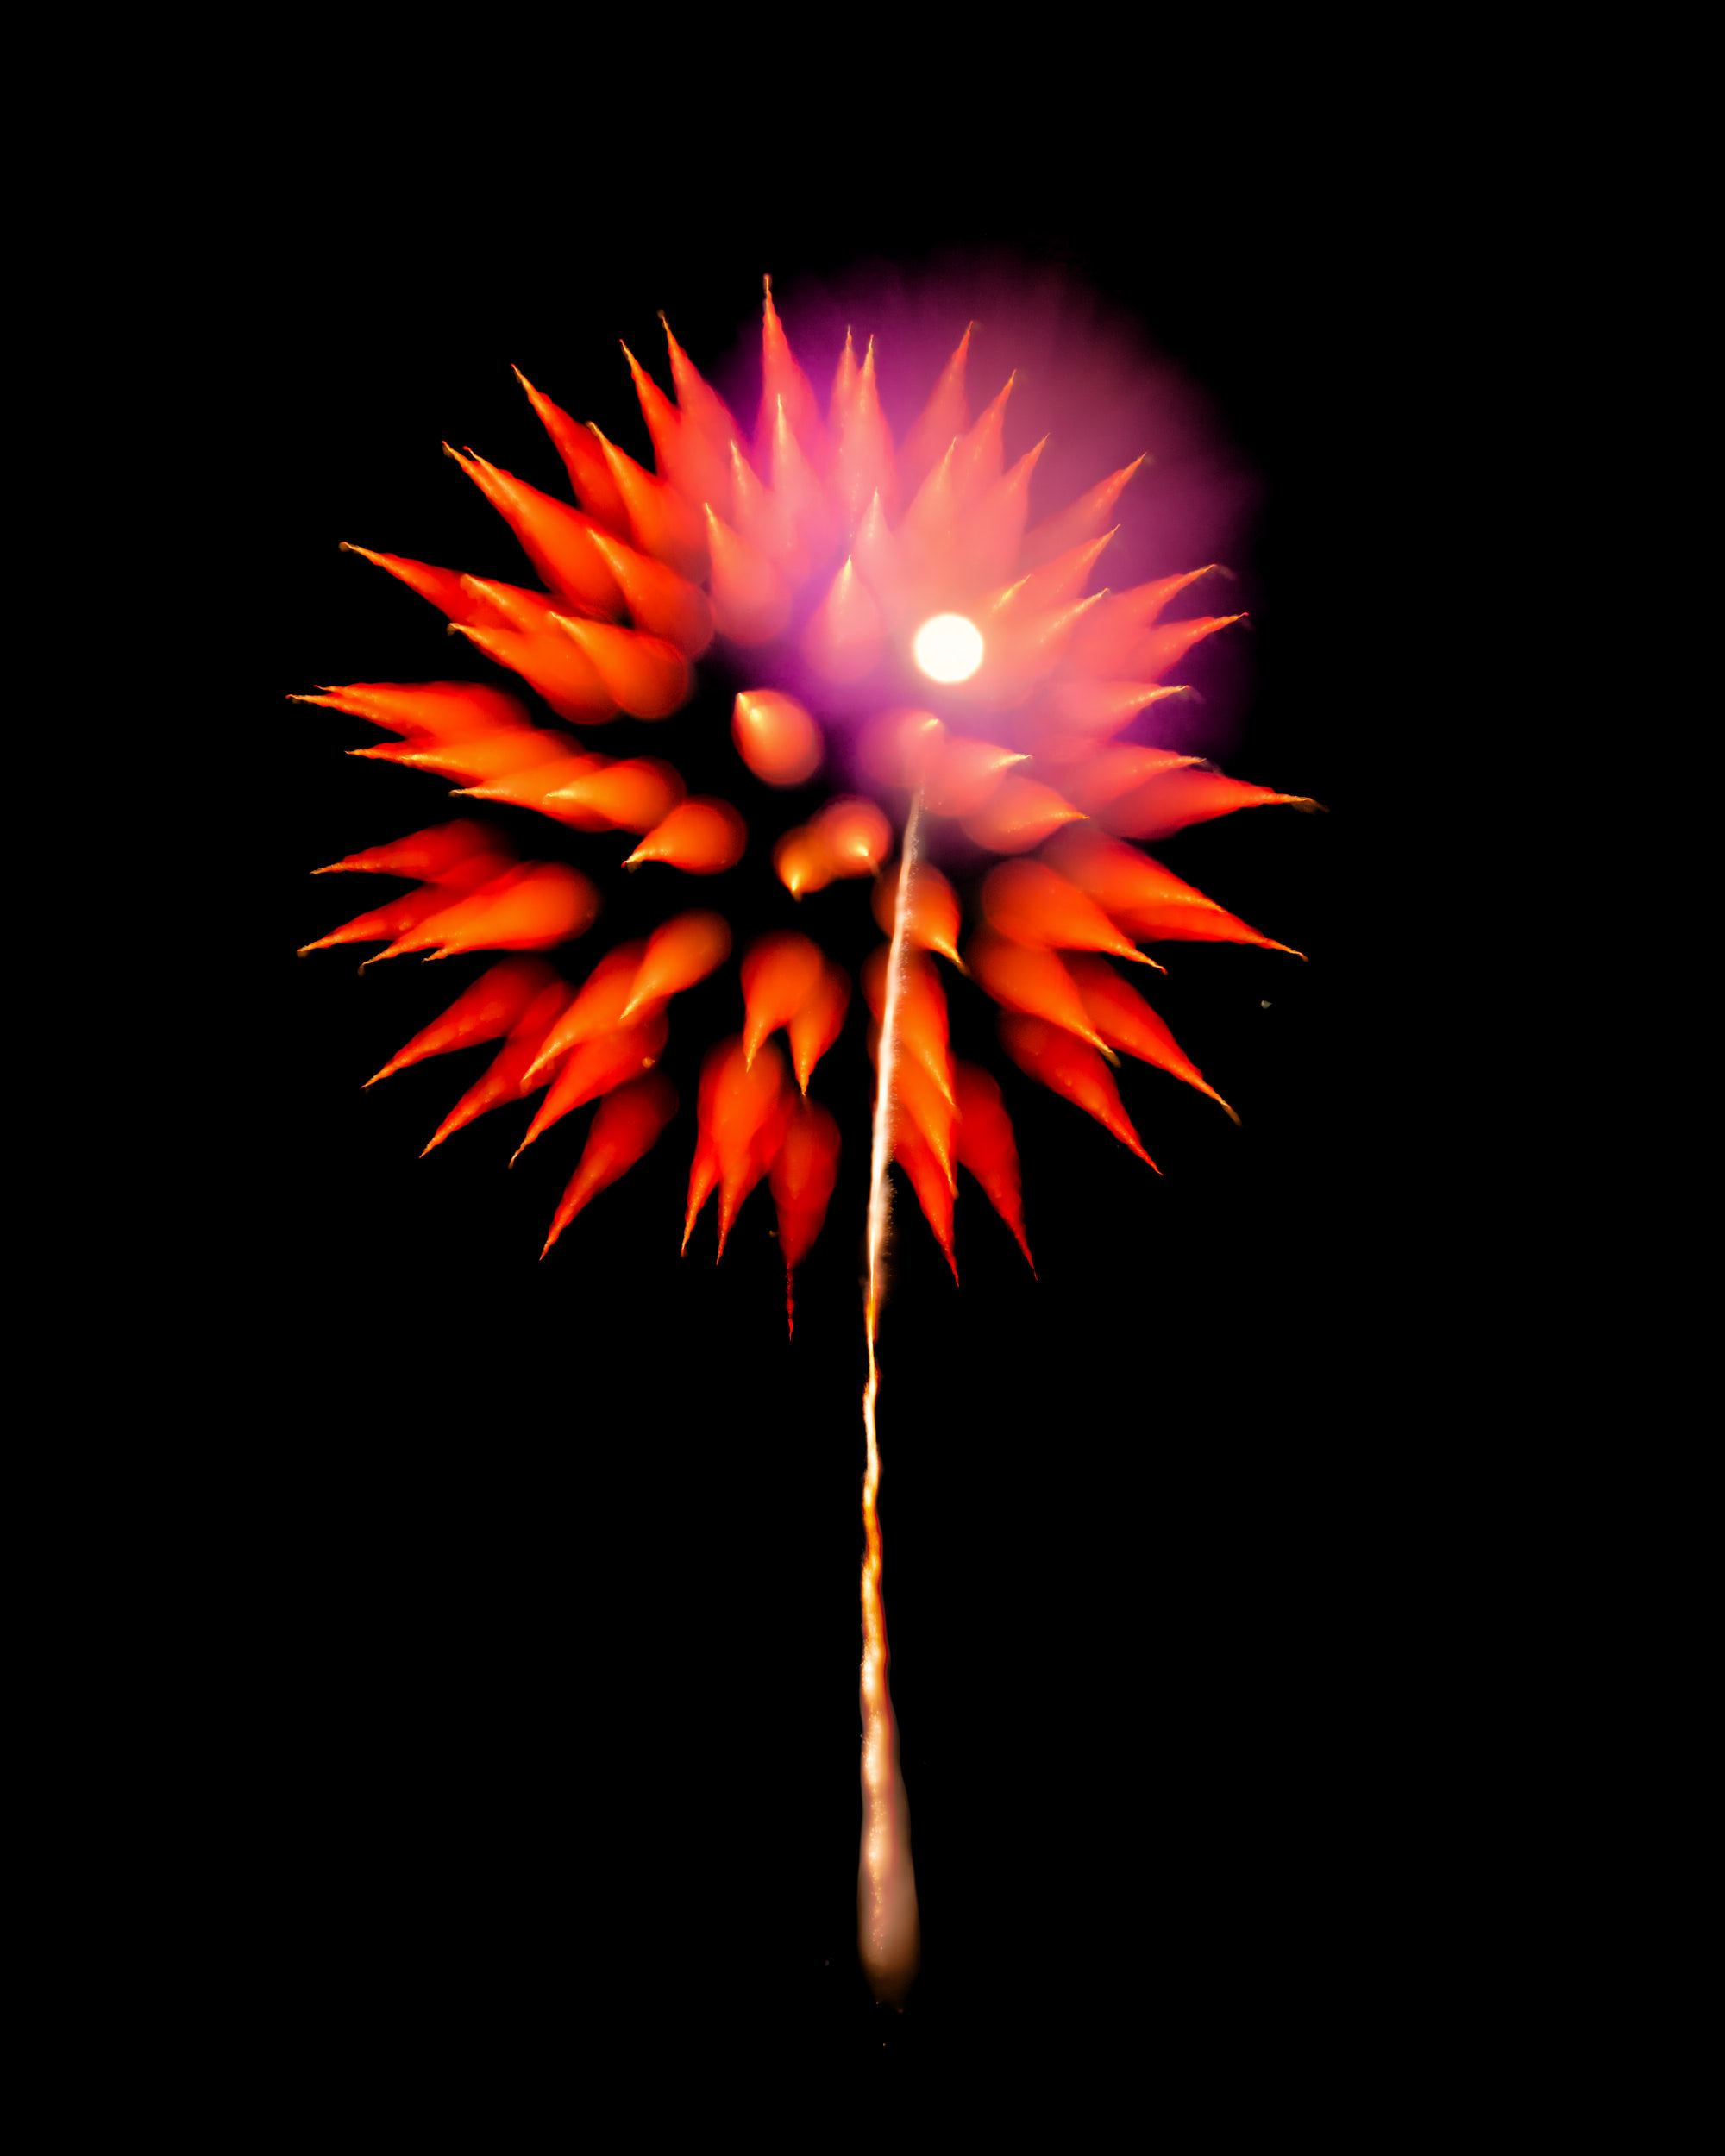 Firework Photo, Night Flower 37, WIRED Magazine